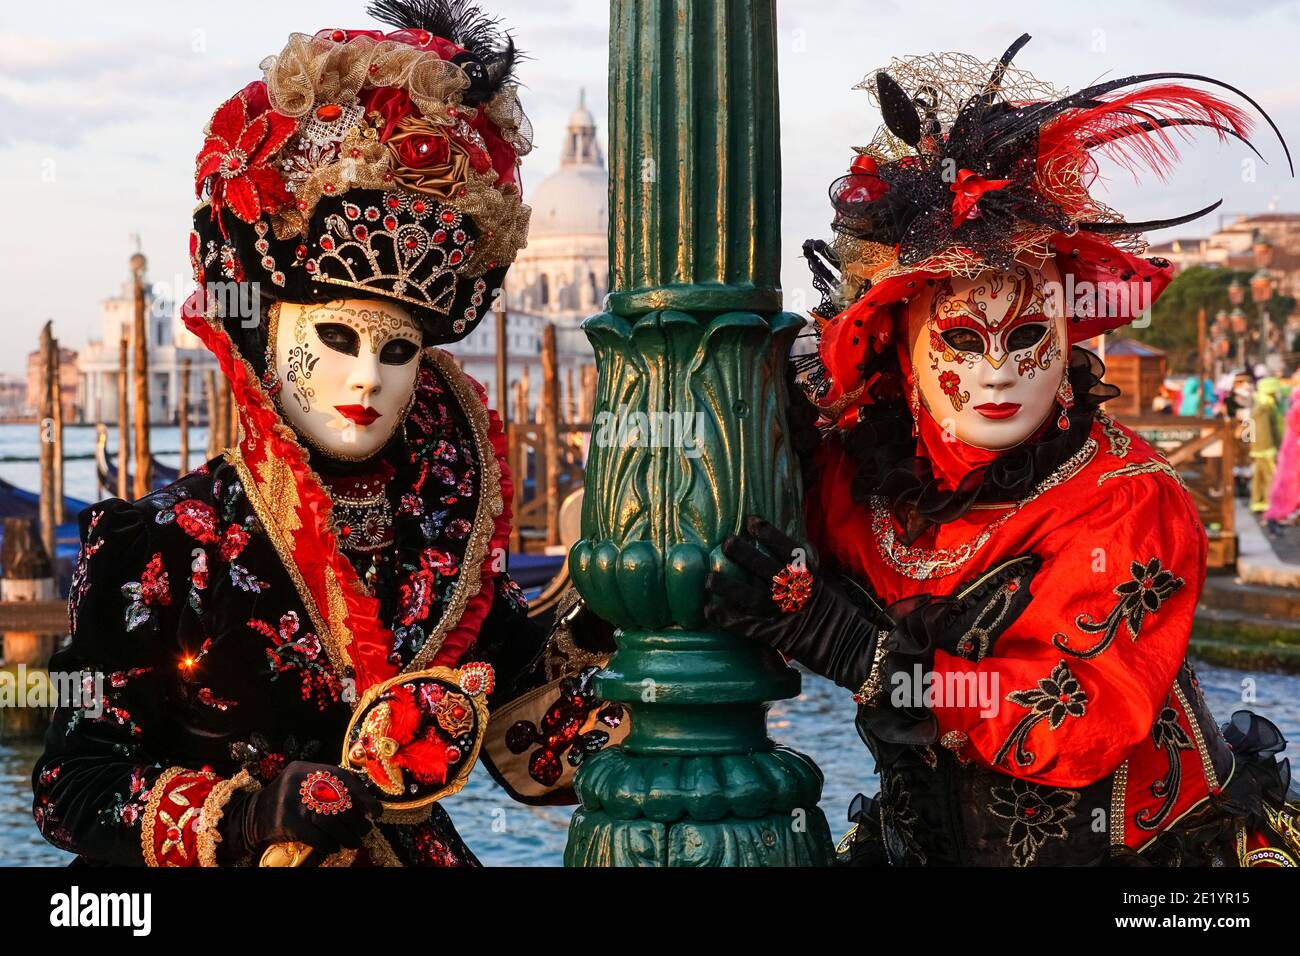 Deux femmes vêtues de costumes traditionnels décorés et de masques peints pendant le Carnaval de Venise à Venise, en Italie Banque D'Images